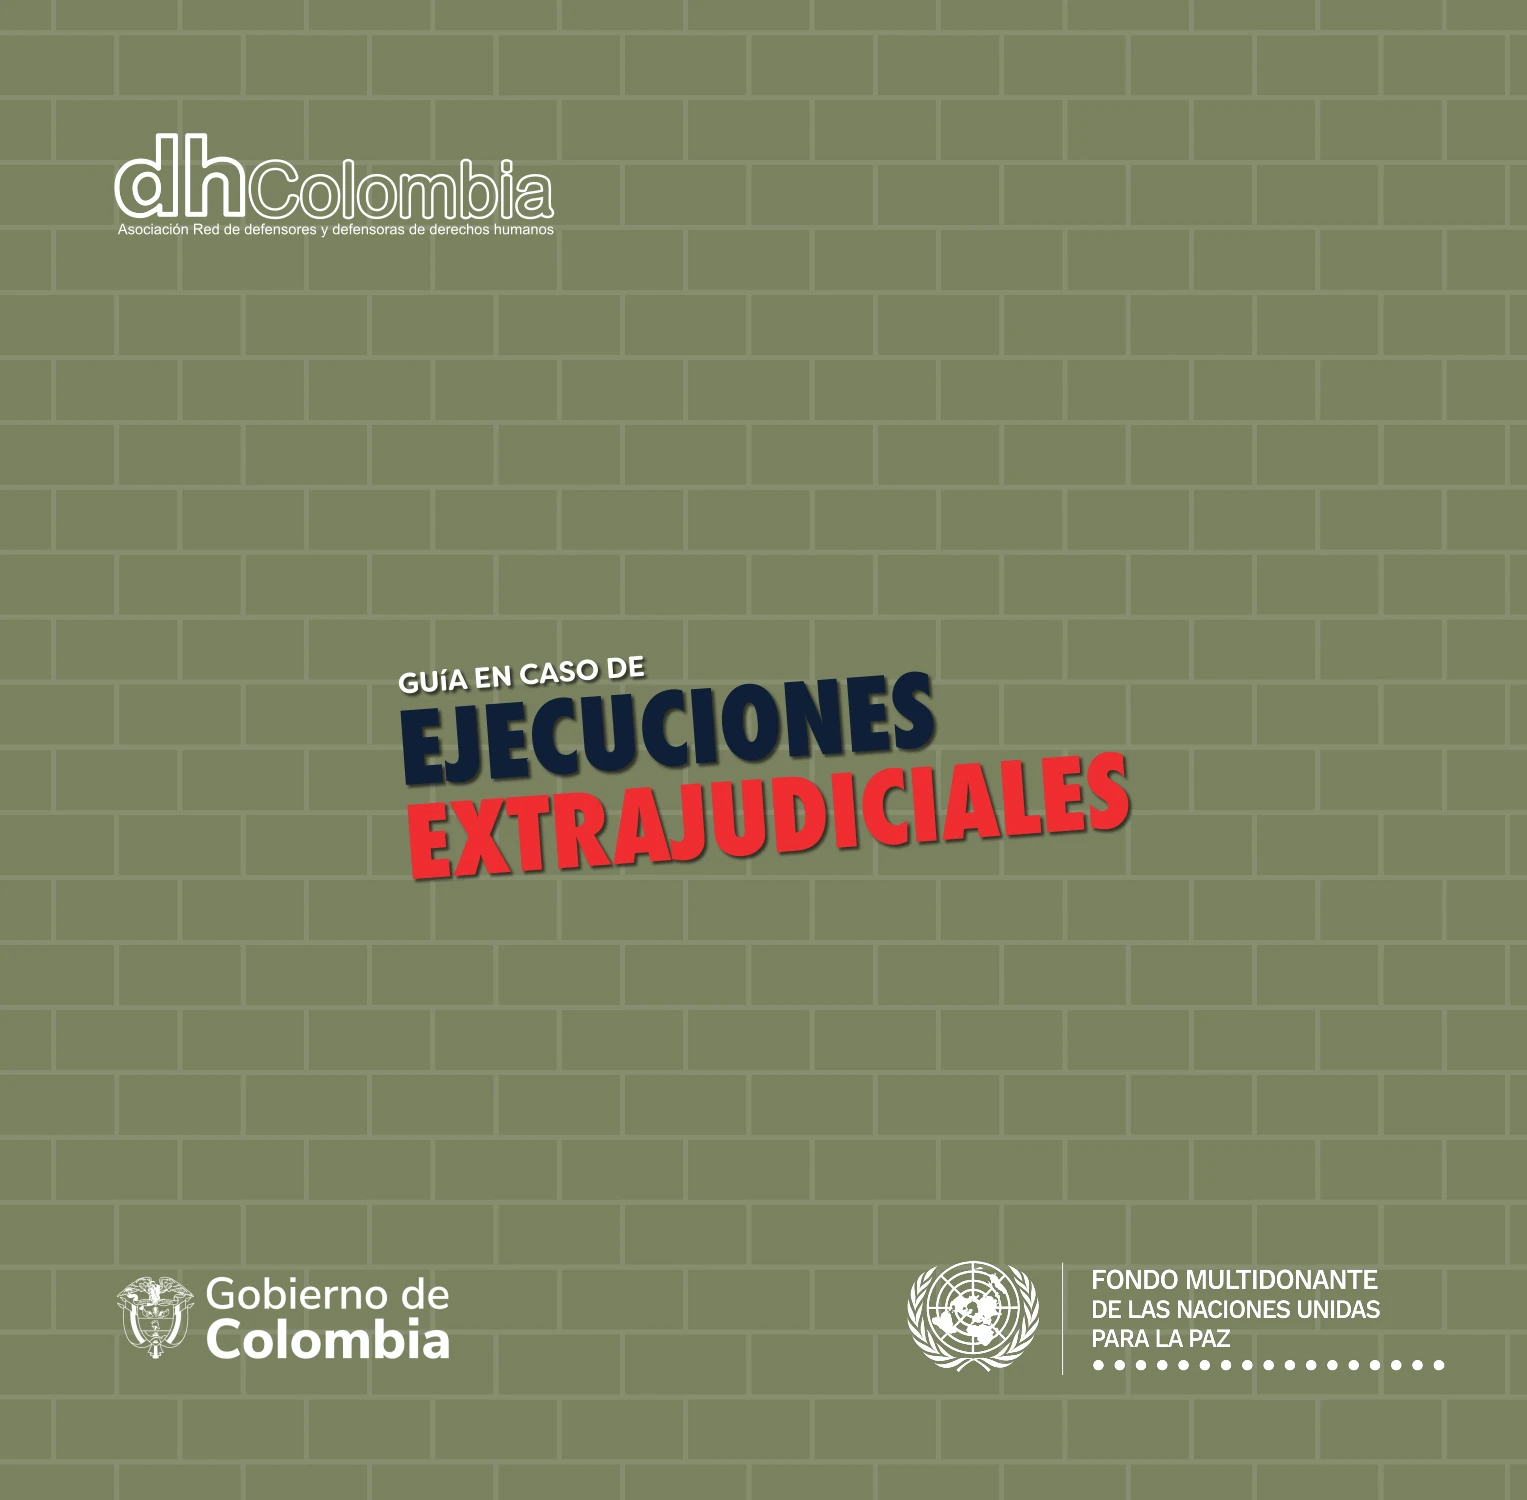 dhColombia Ejecuciones extrajudiciales 2.07 ejecuciones